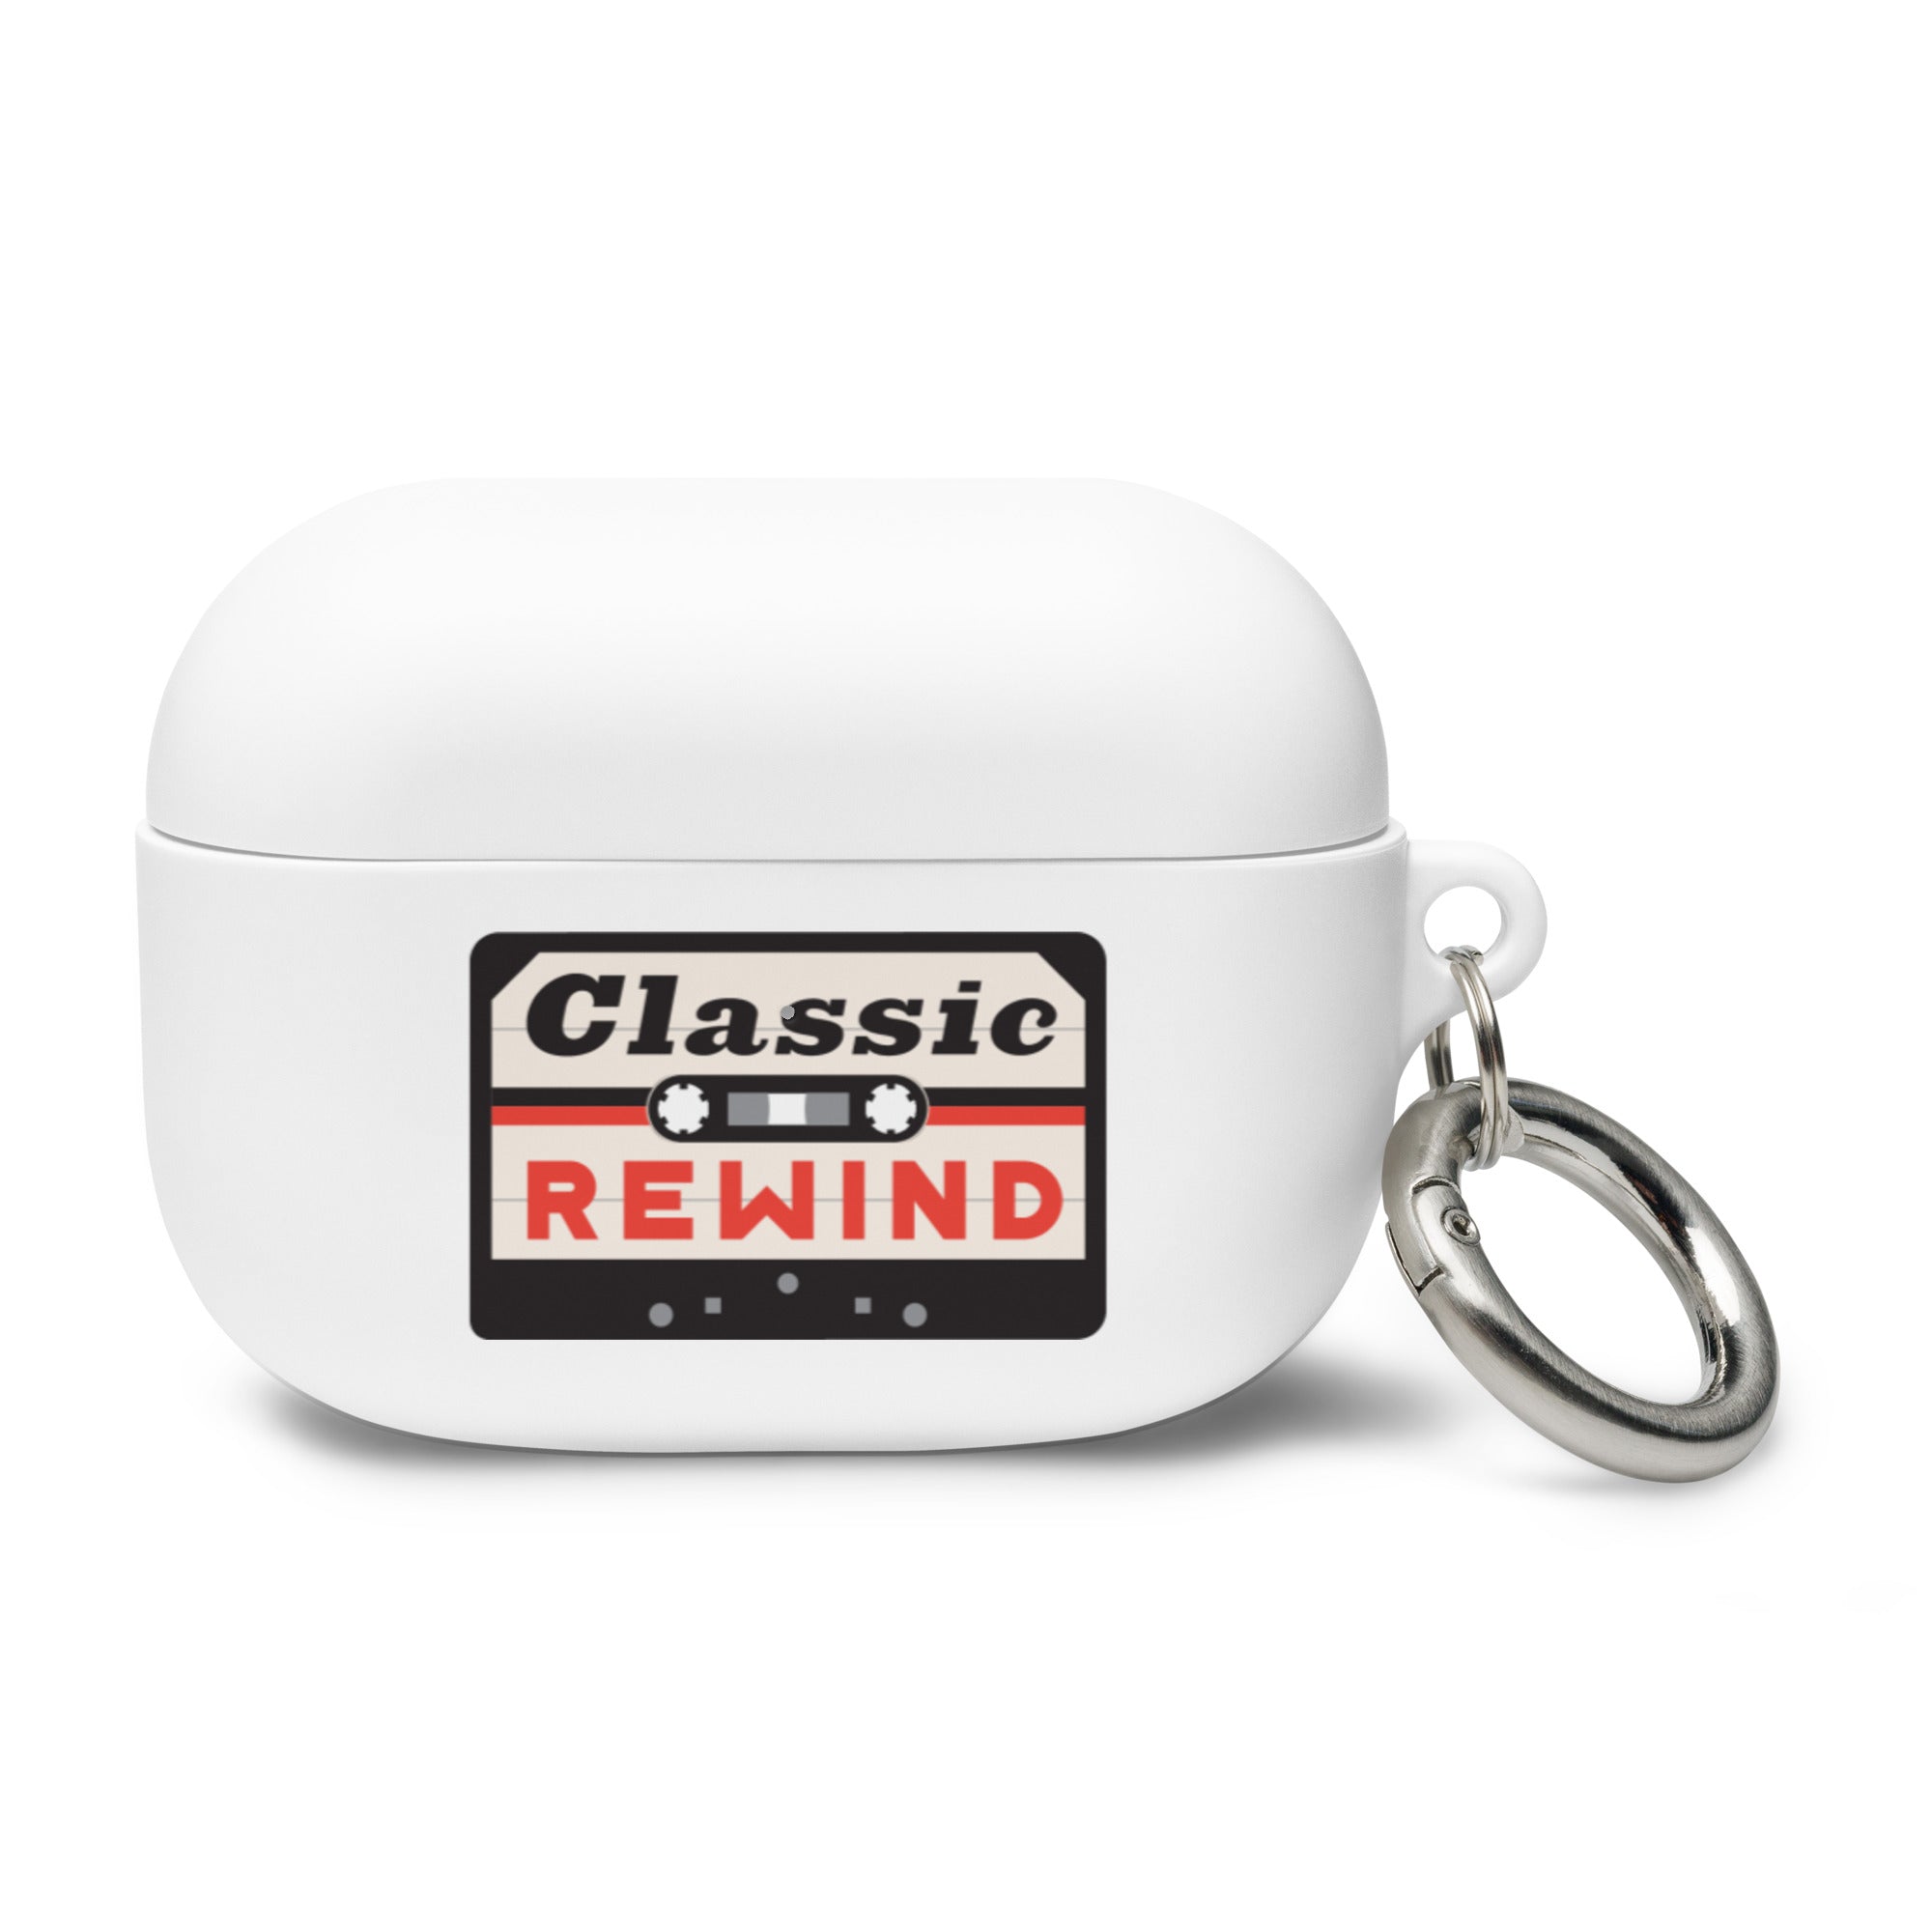 Classic Rewind: AirPods® Case Cover